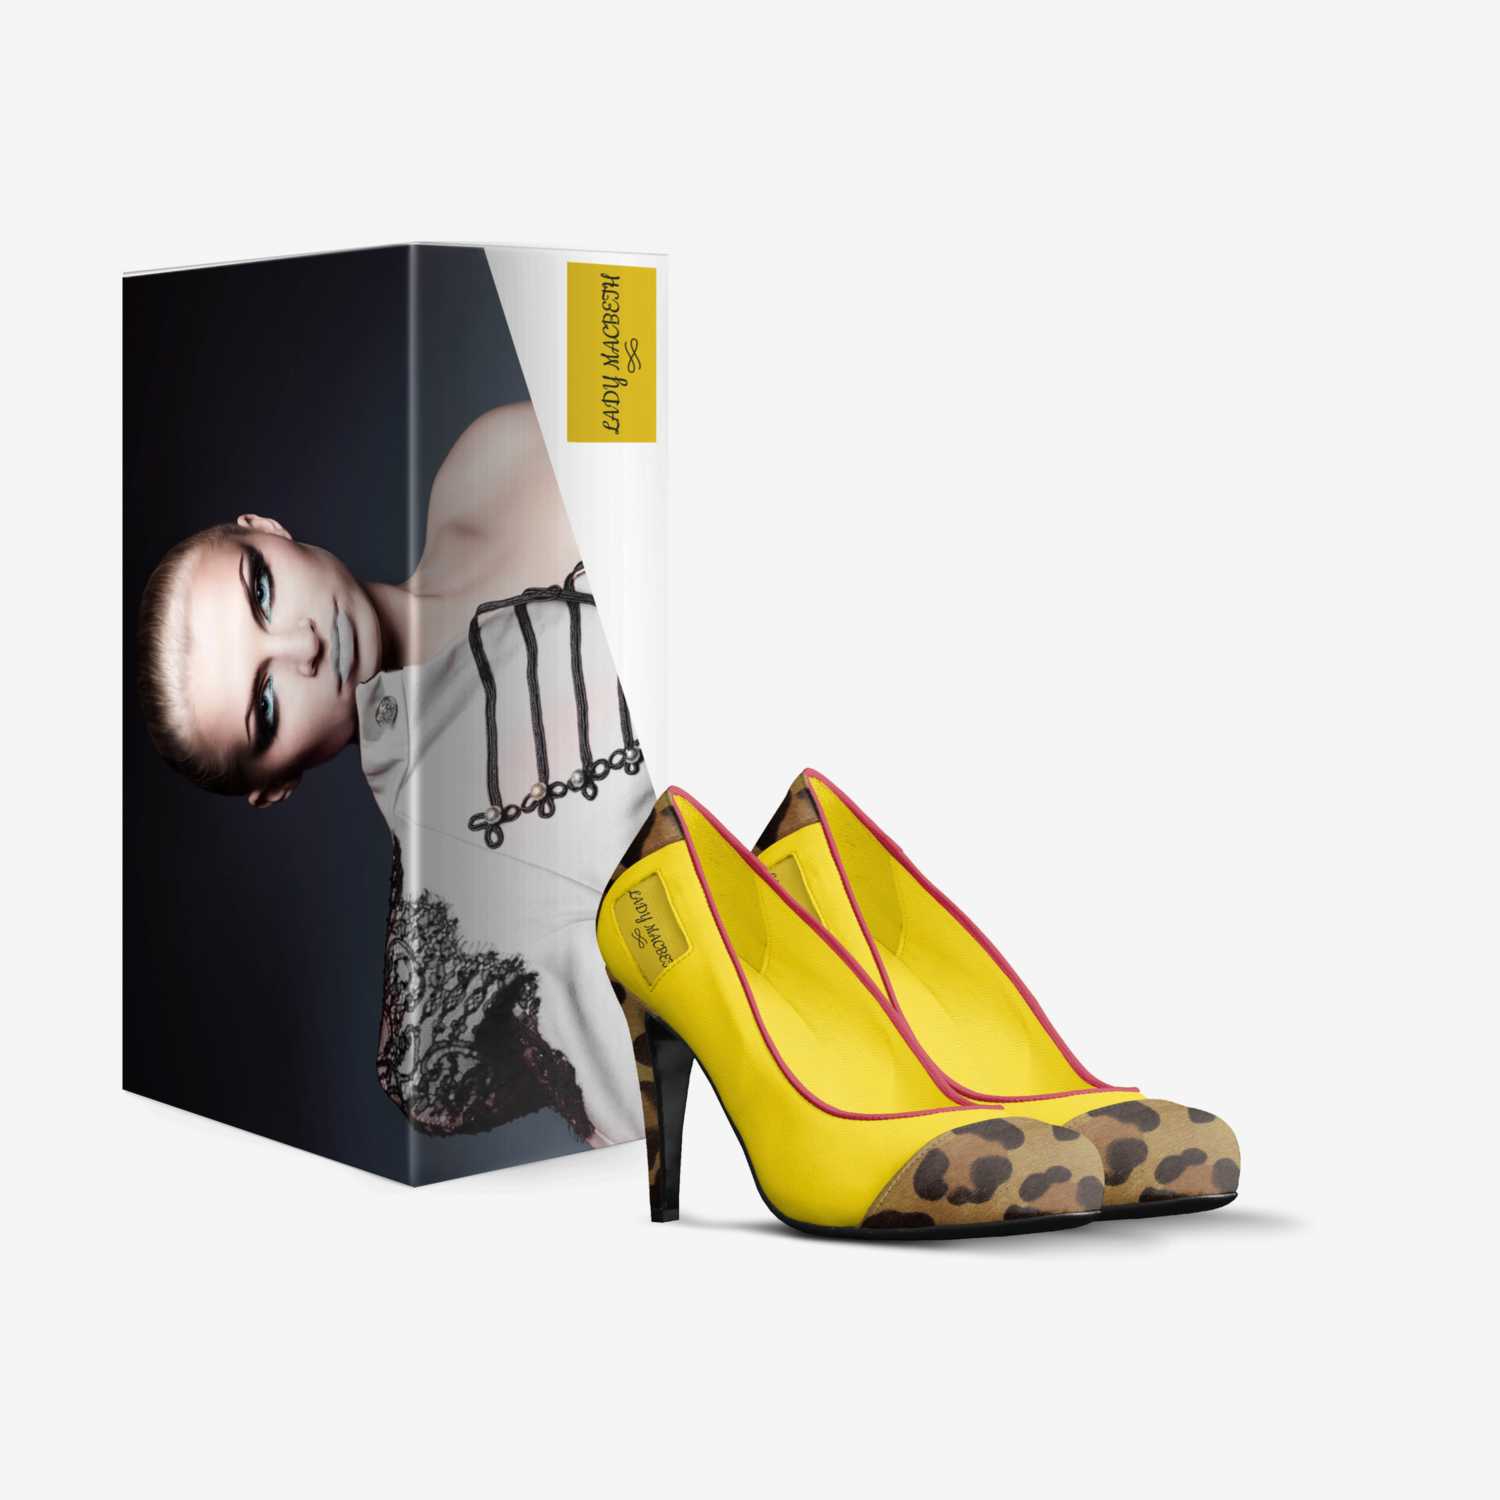 LADY MACBETH custom made in Italy shoes by Lauretta Macbeth | Box view